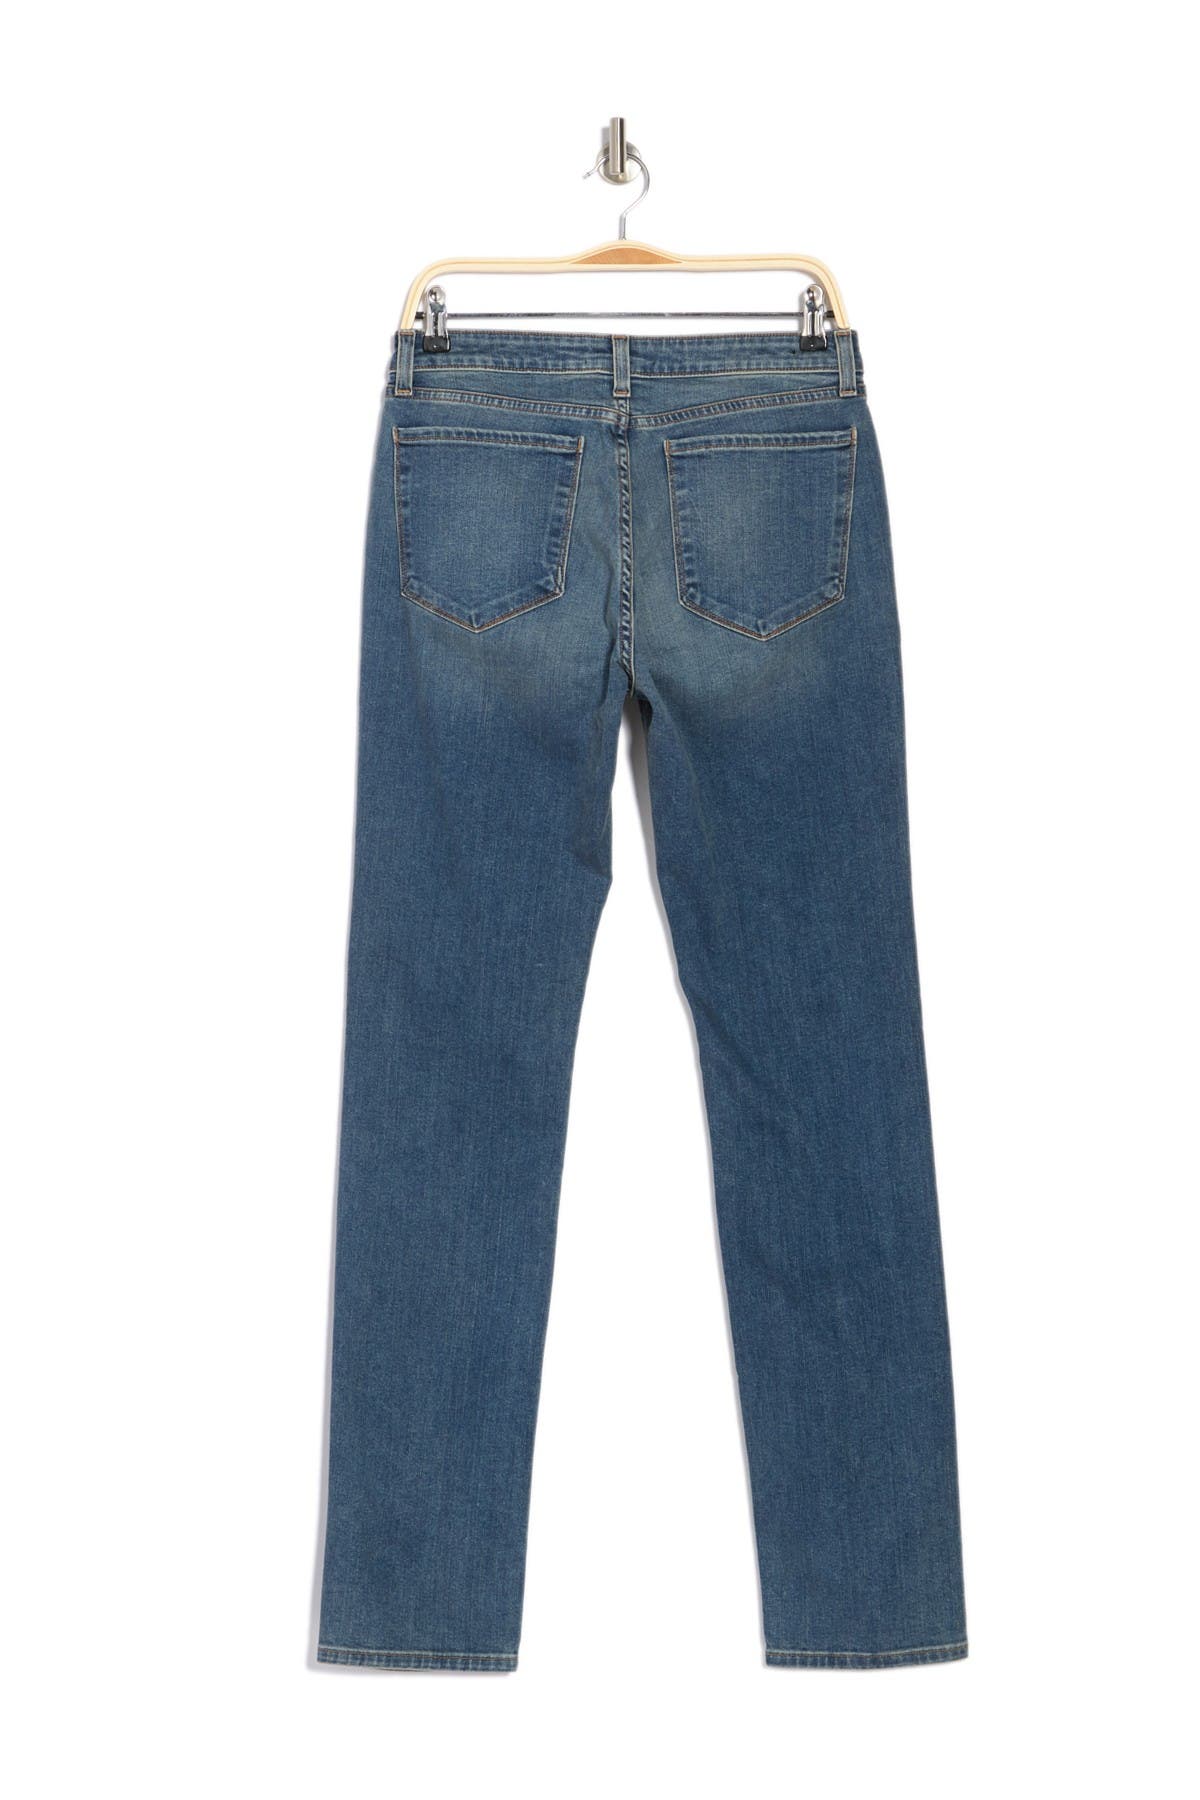 Monfrere Straight Leg Jeans In Medium Blue3